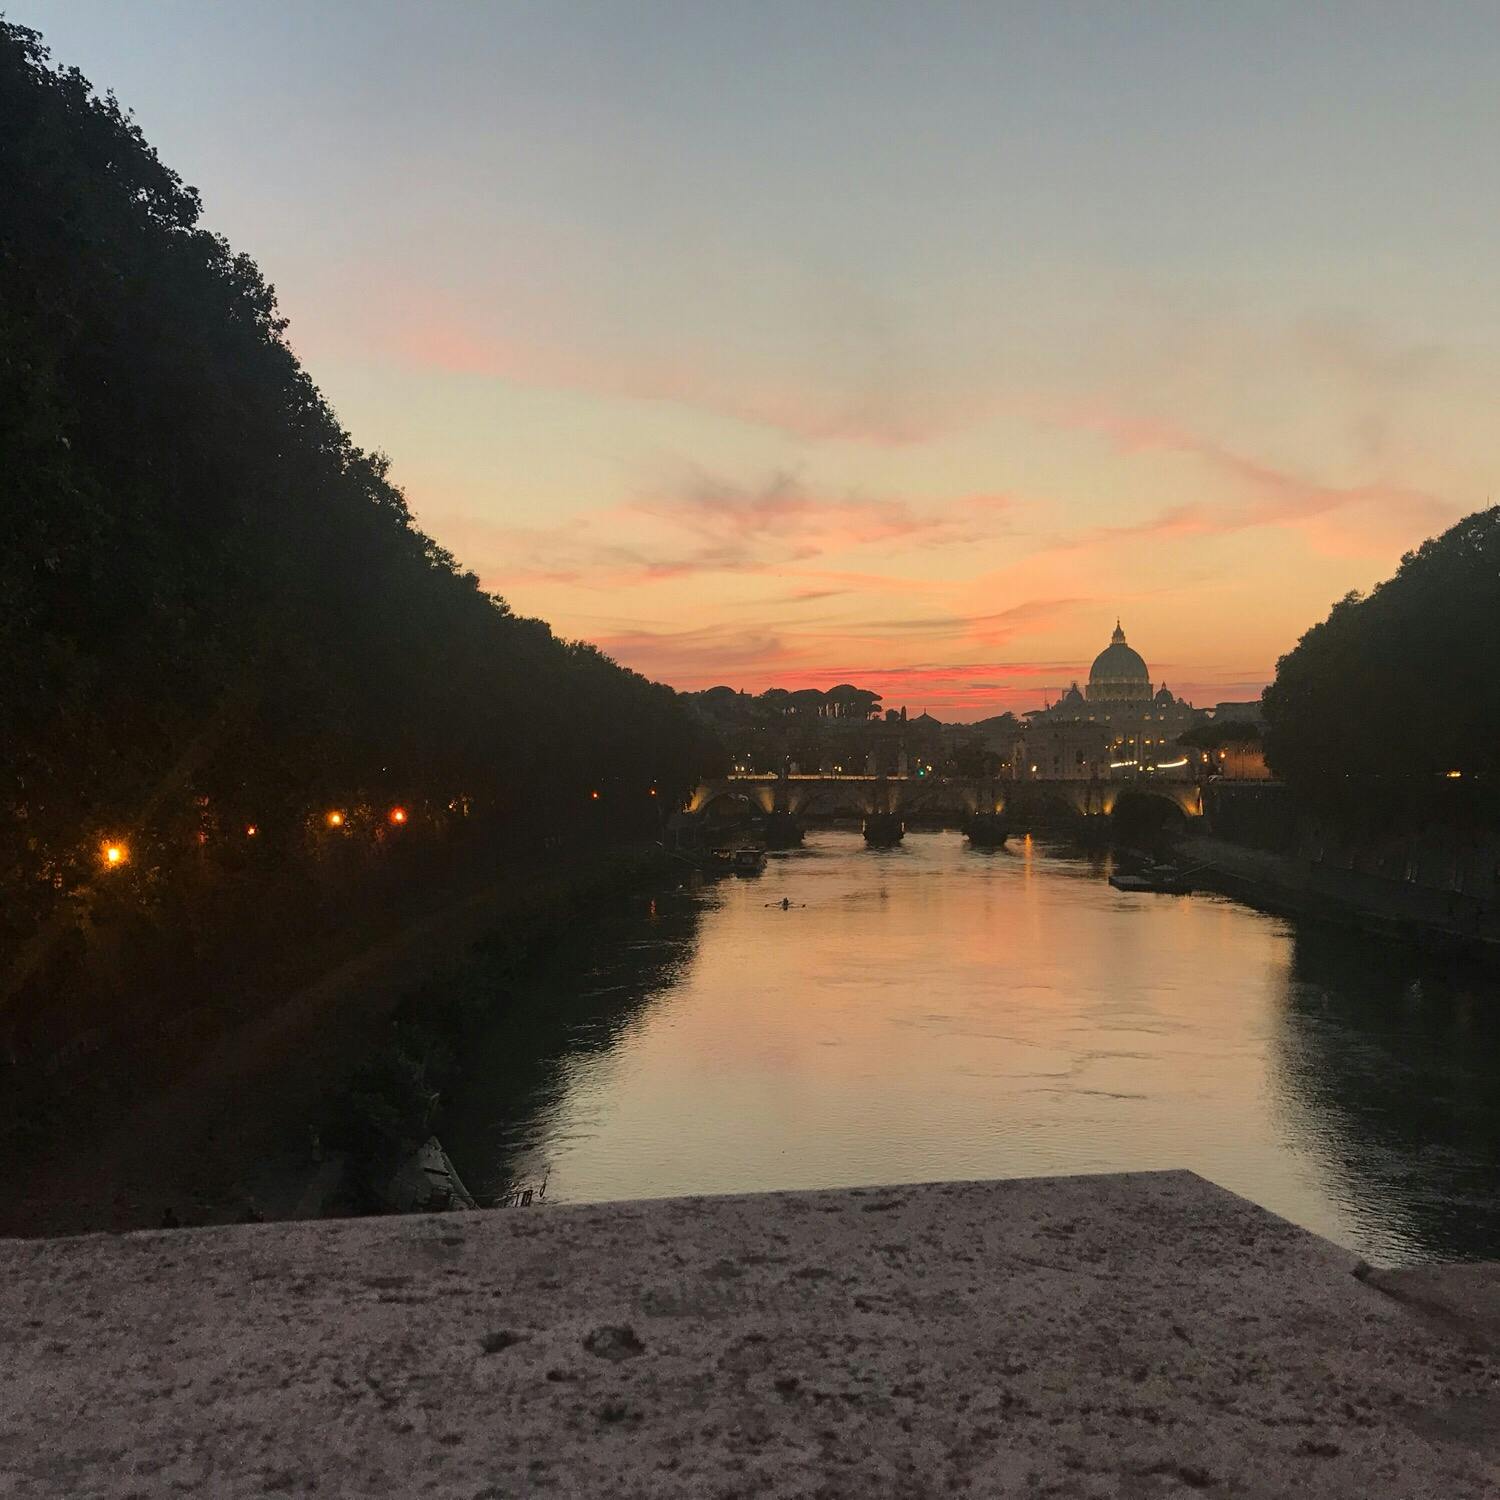 サンタンジェロ城 Castel Sant Angelo の投稿写真 感想 みどころ ローマ サンタンジェロ城近くの橋から見た夕暮れ トリップノート